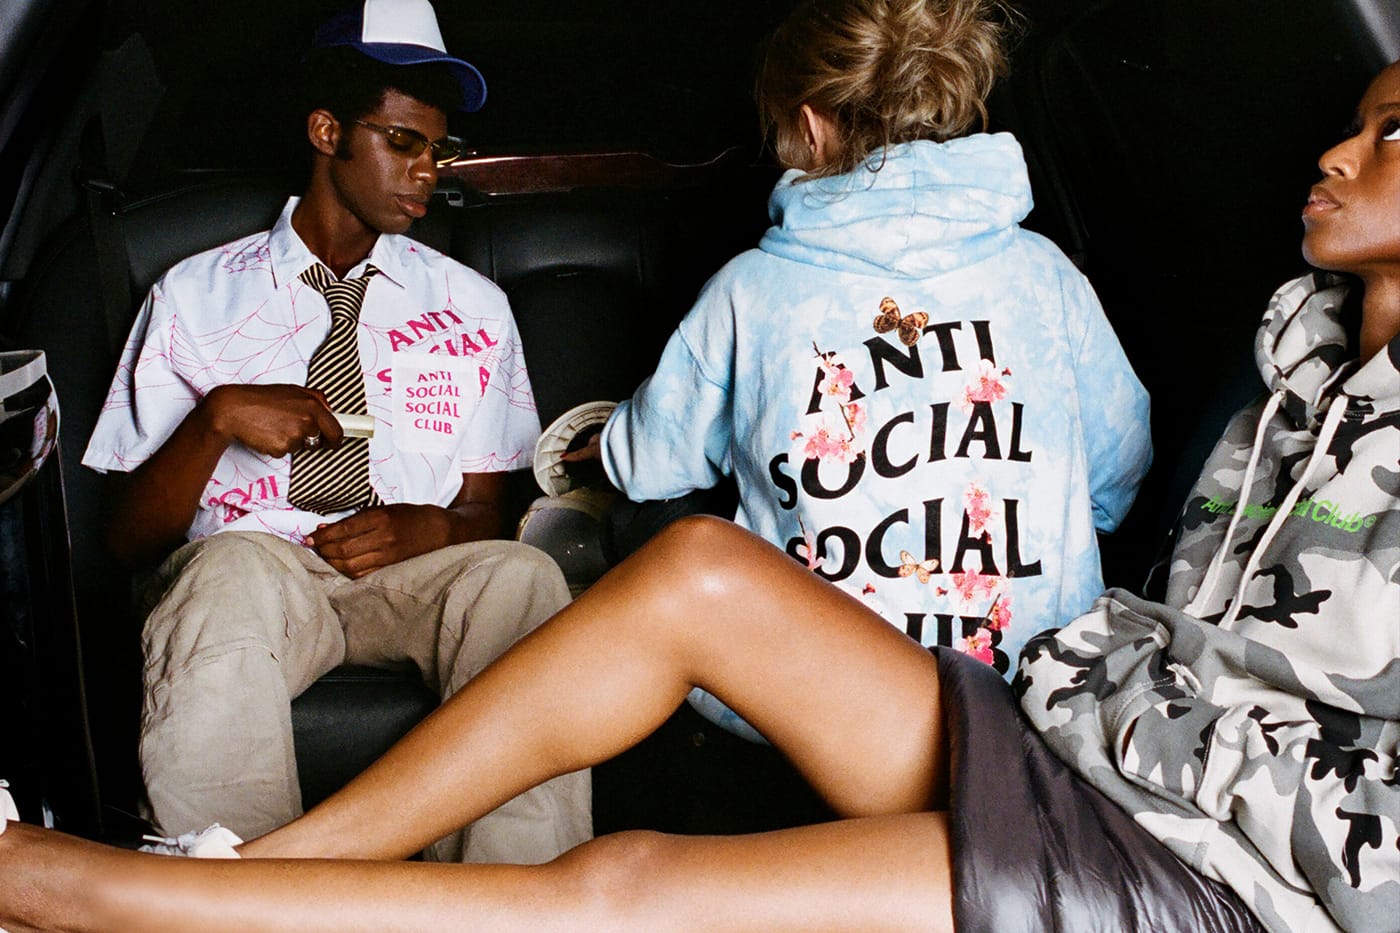 メンズanti social social club